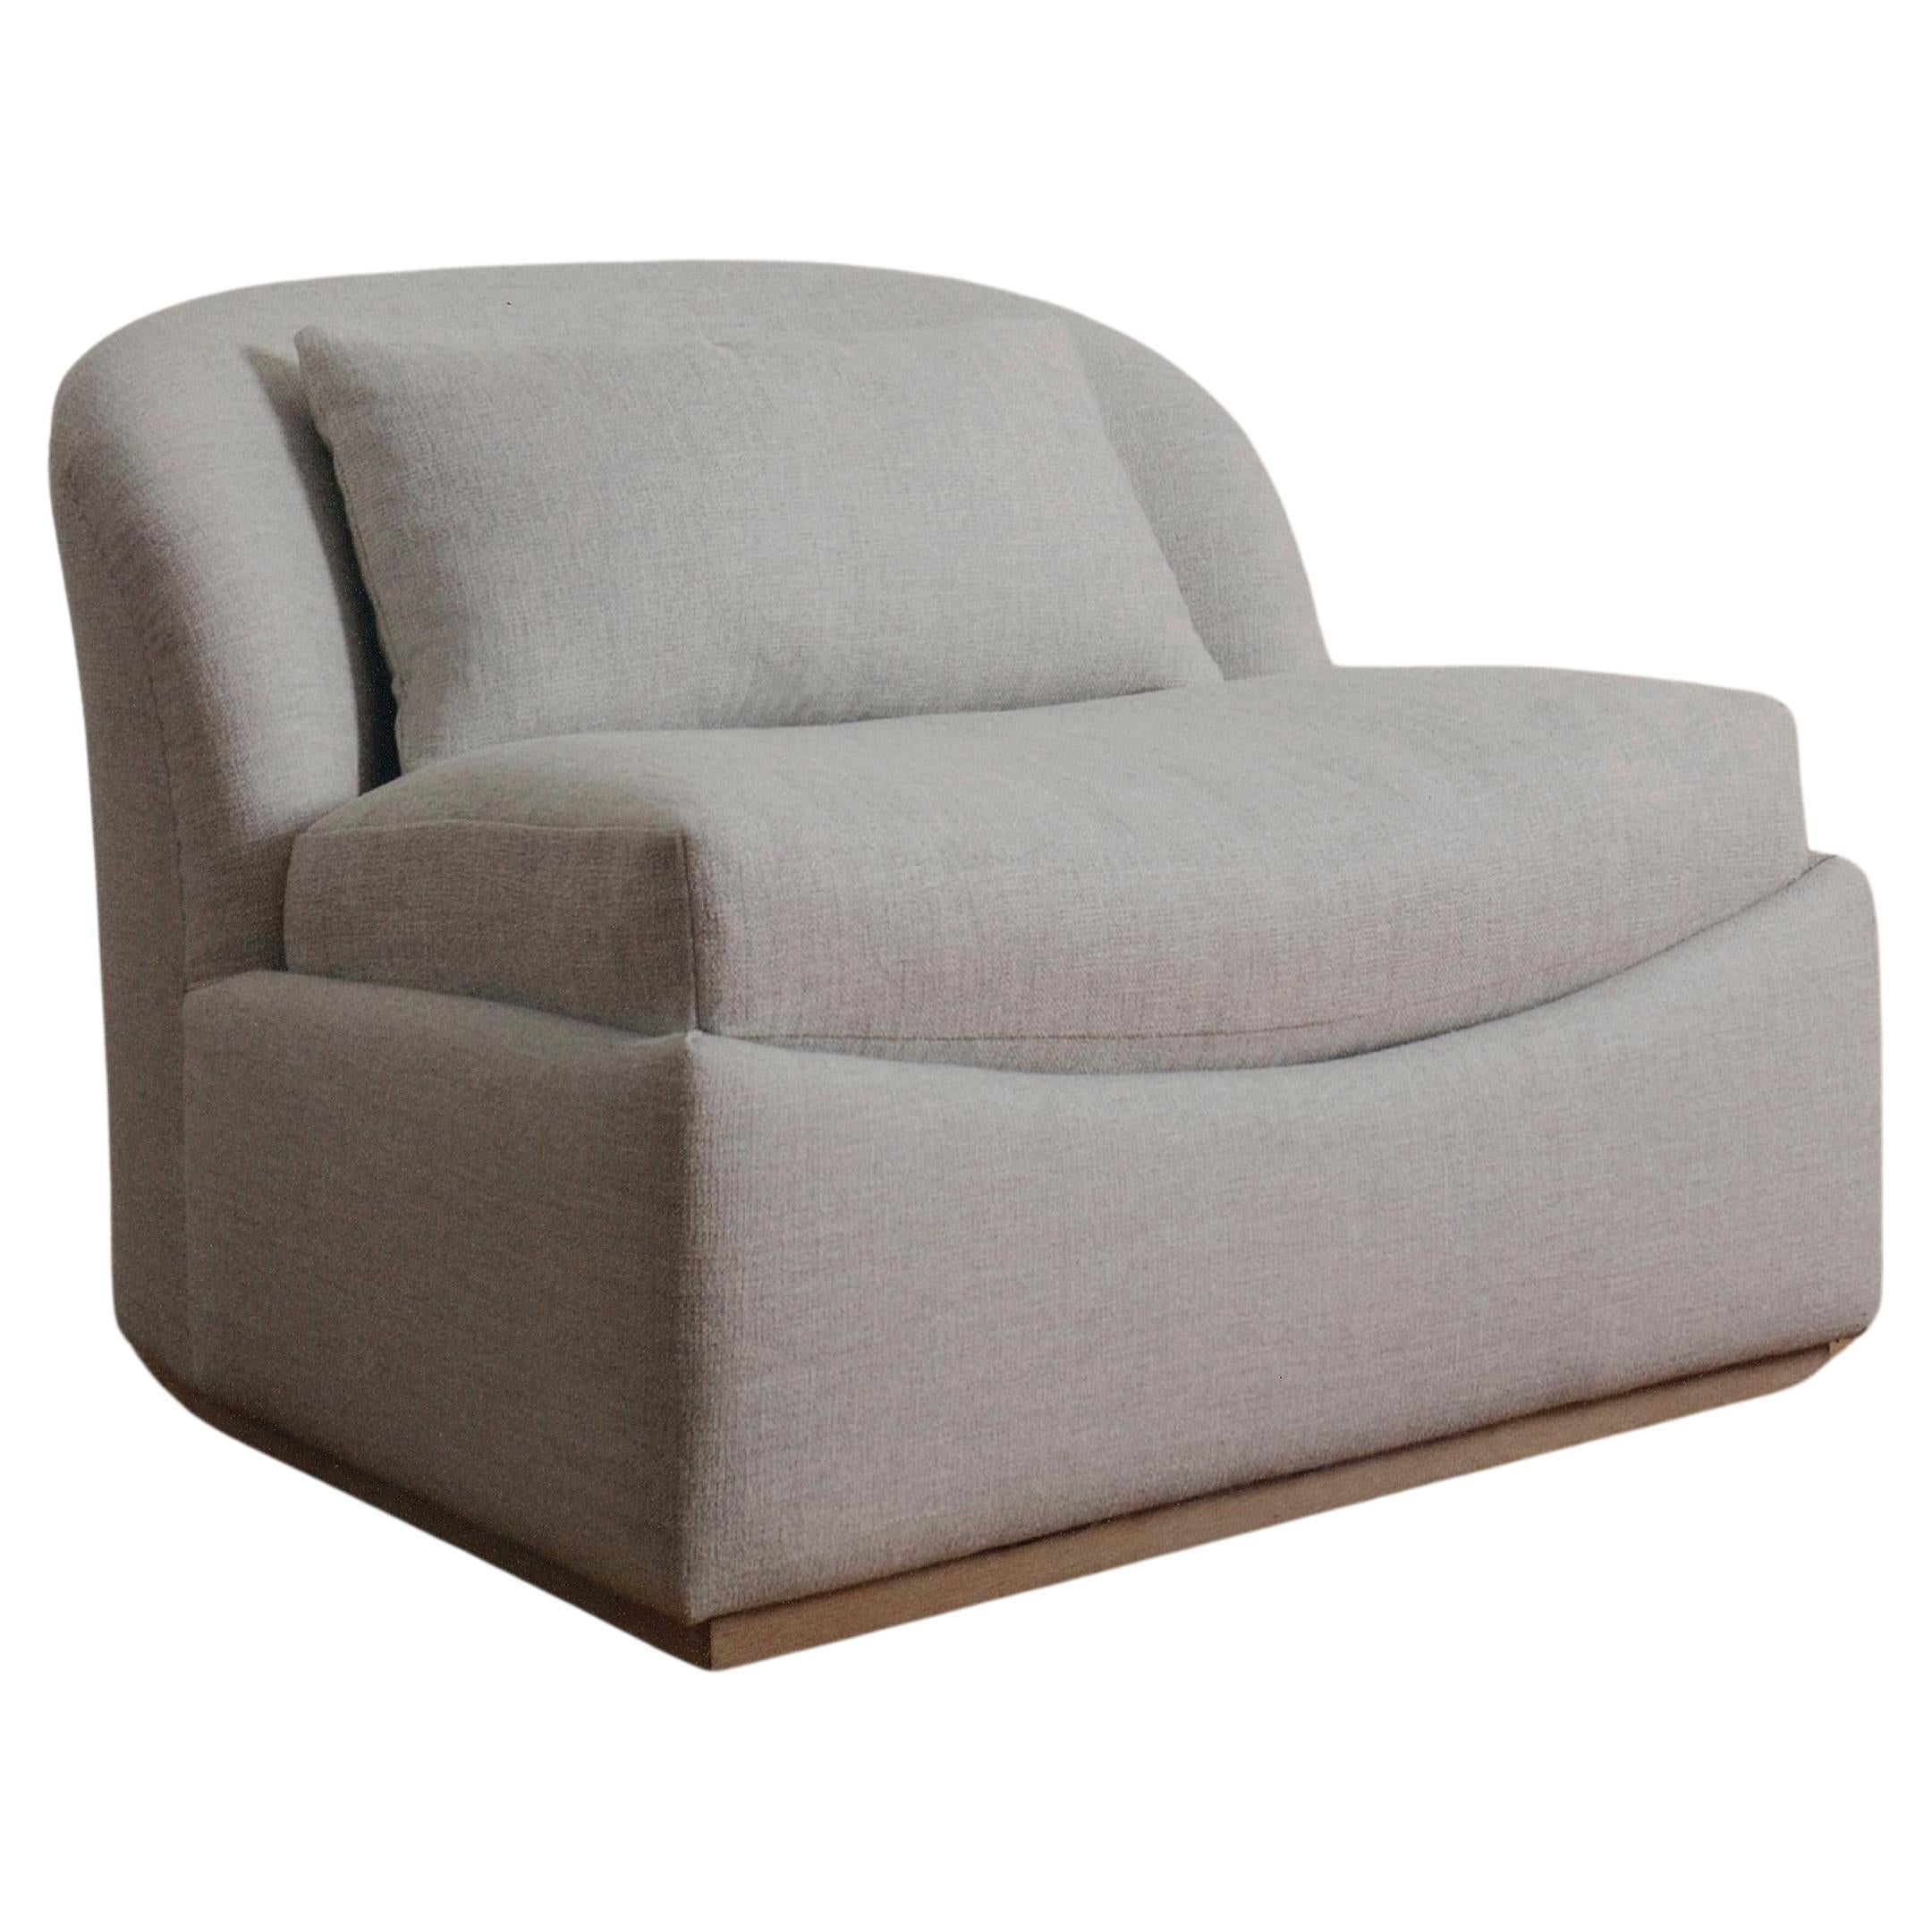 Kinori Chair For Sale